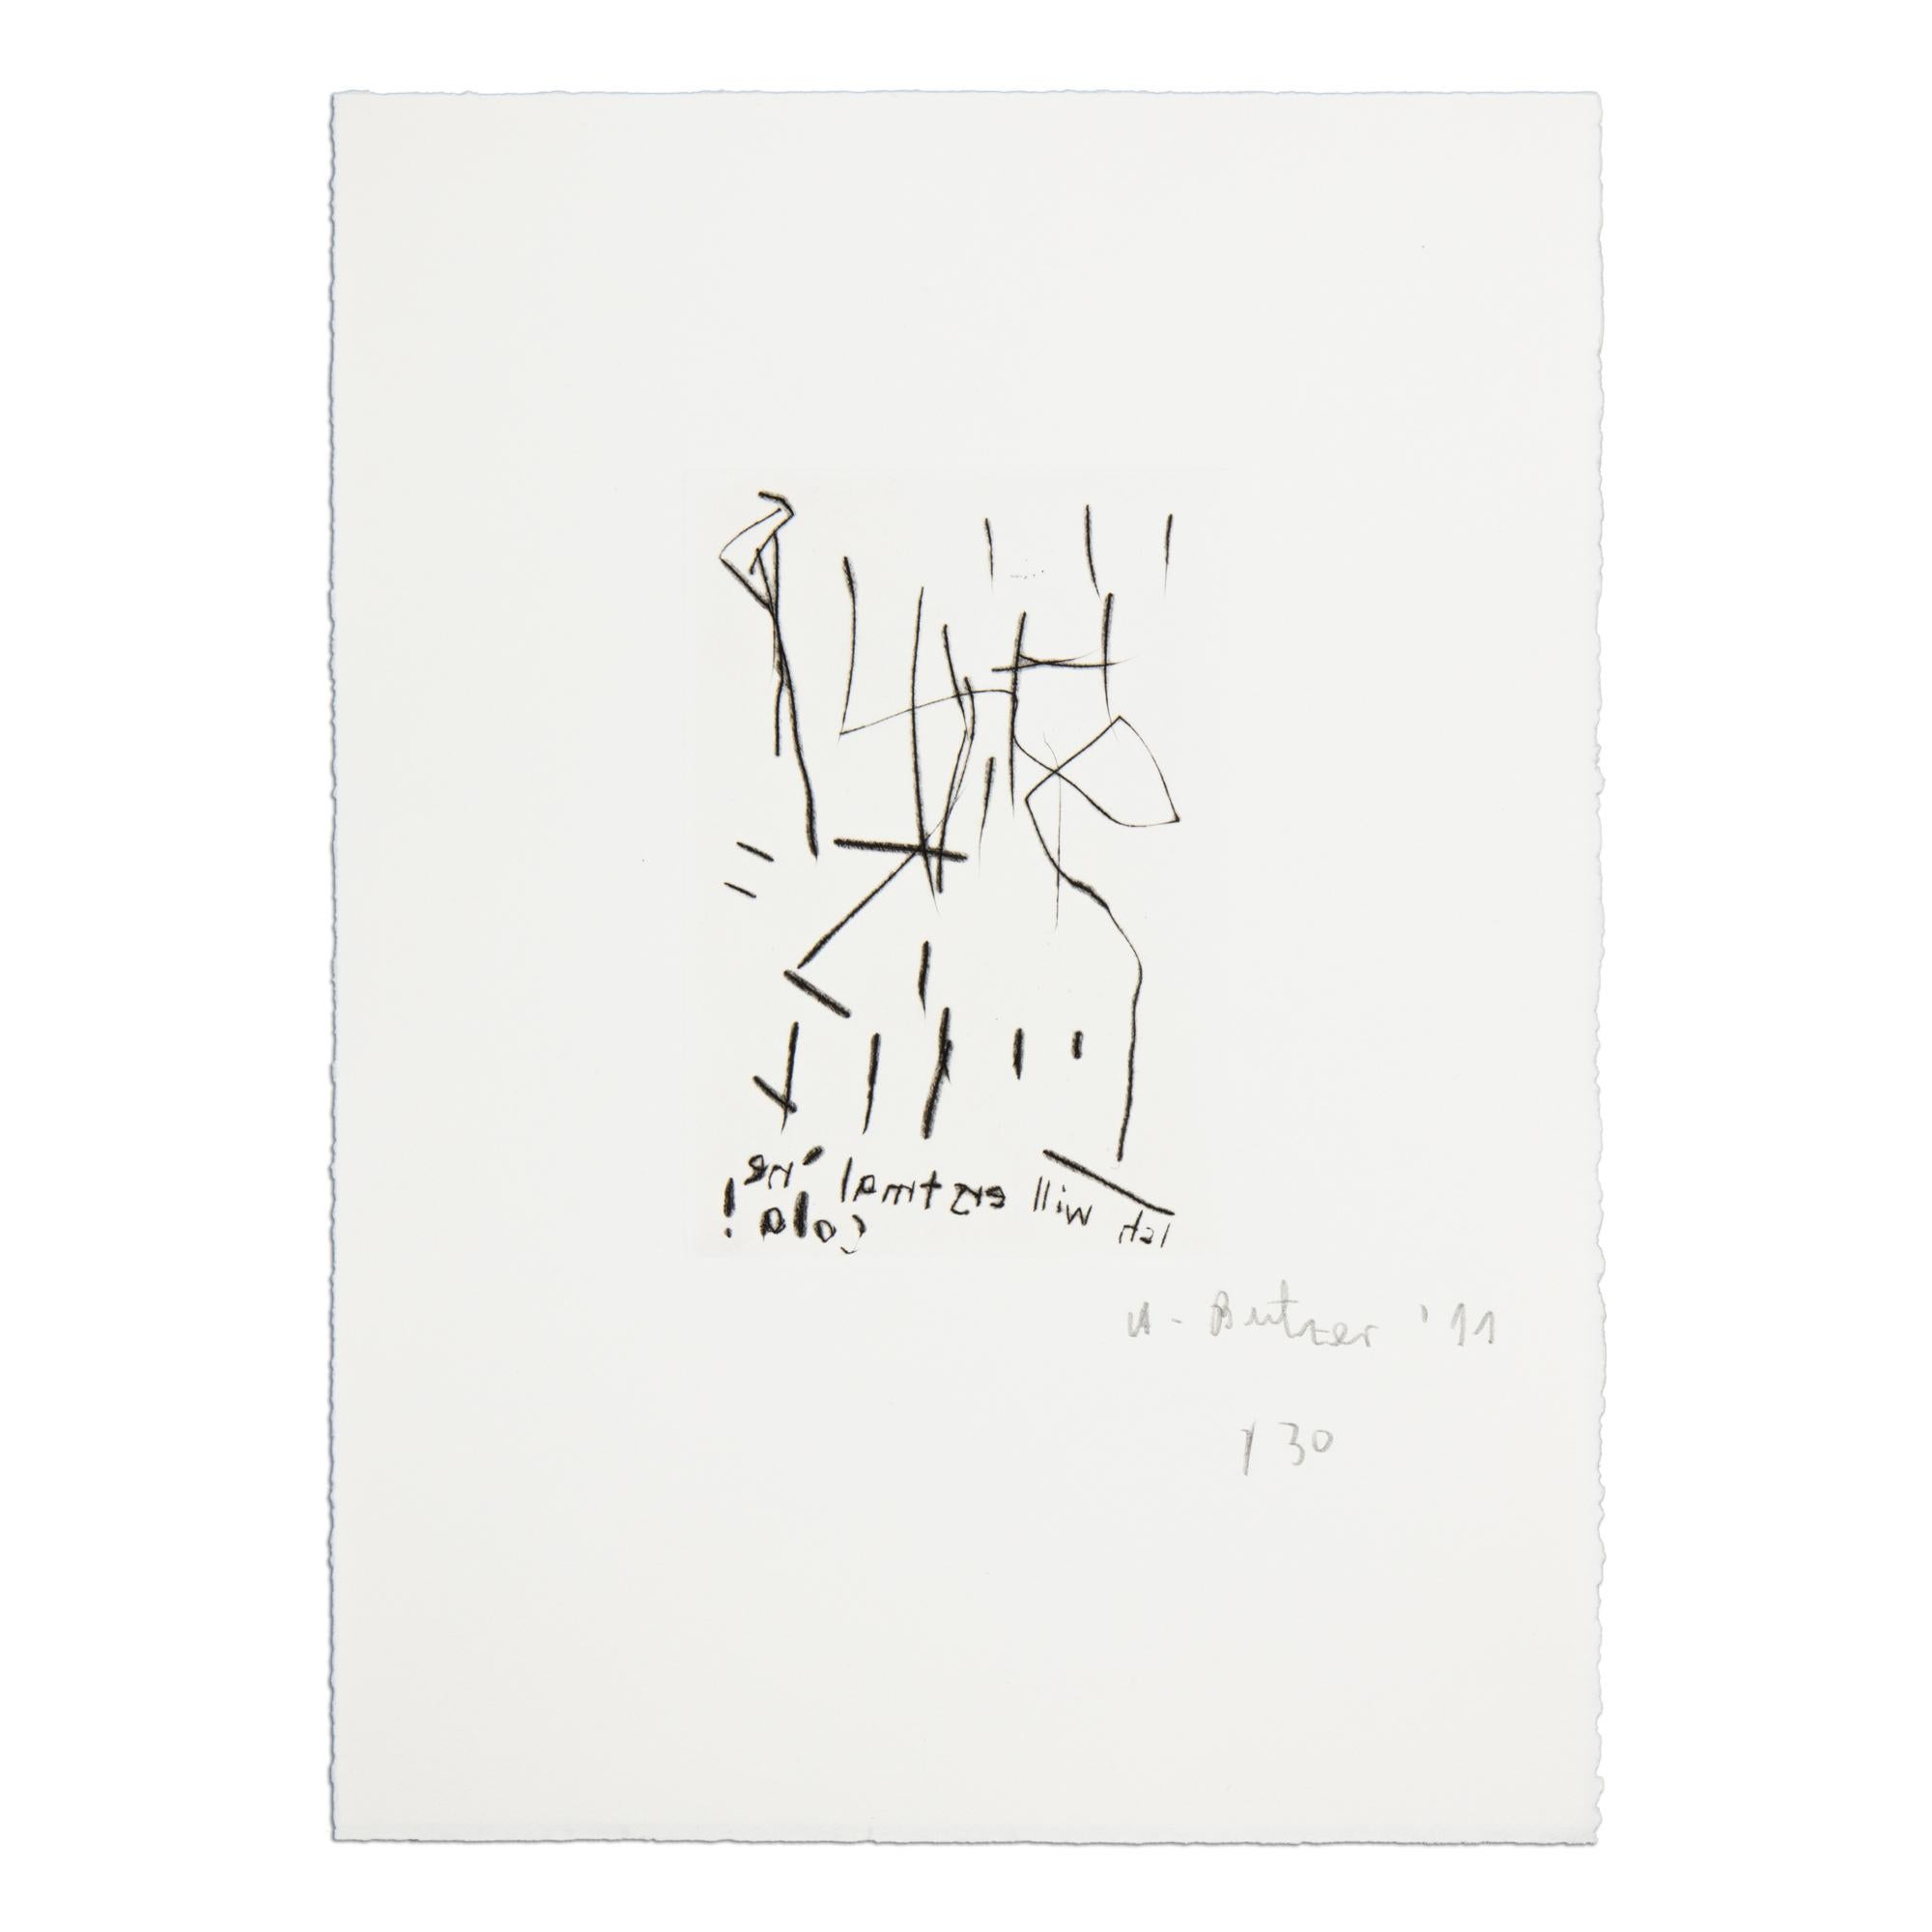 André Butzer (allemand, né en 1973)
Sans titre (Ich will erstmal 'ne Cola !), 2011
Support : Gravure sur papier vélin
Dimensions : 34,7 x 25 cm : 34,7 x 25 cm
Edition de 30 exemplaires : Signé et numéroté à la main au crayon
Condit : Mint